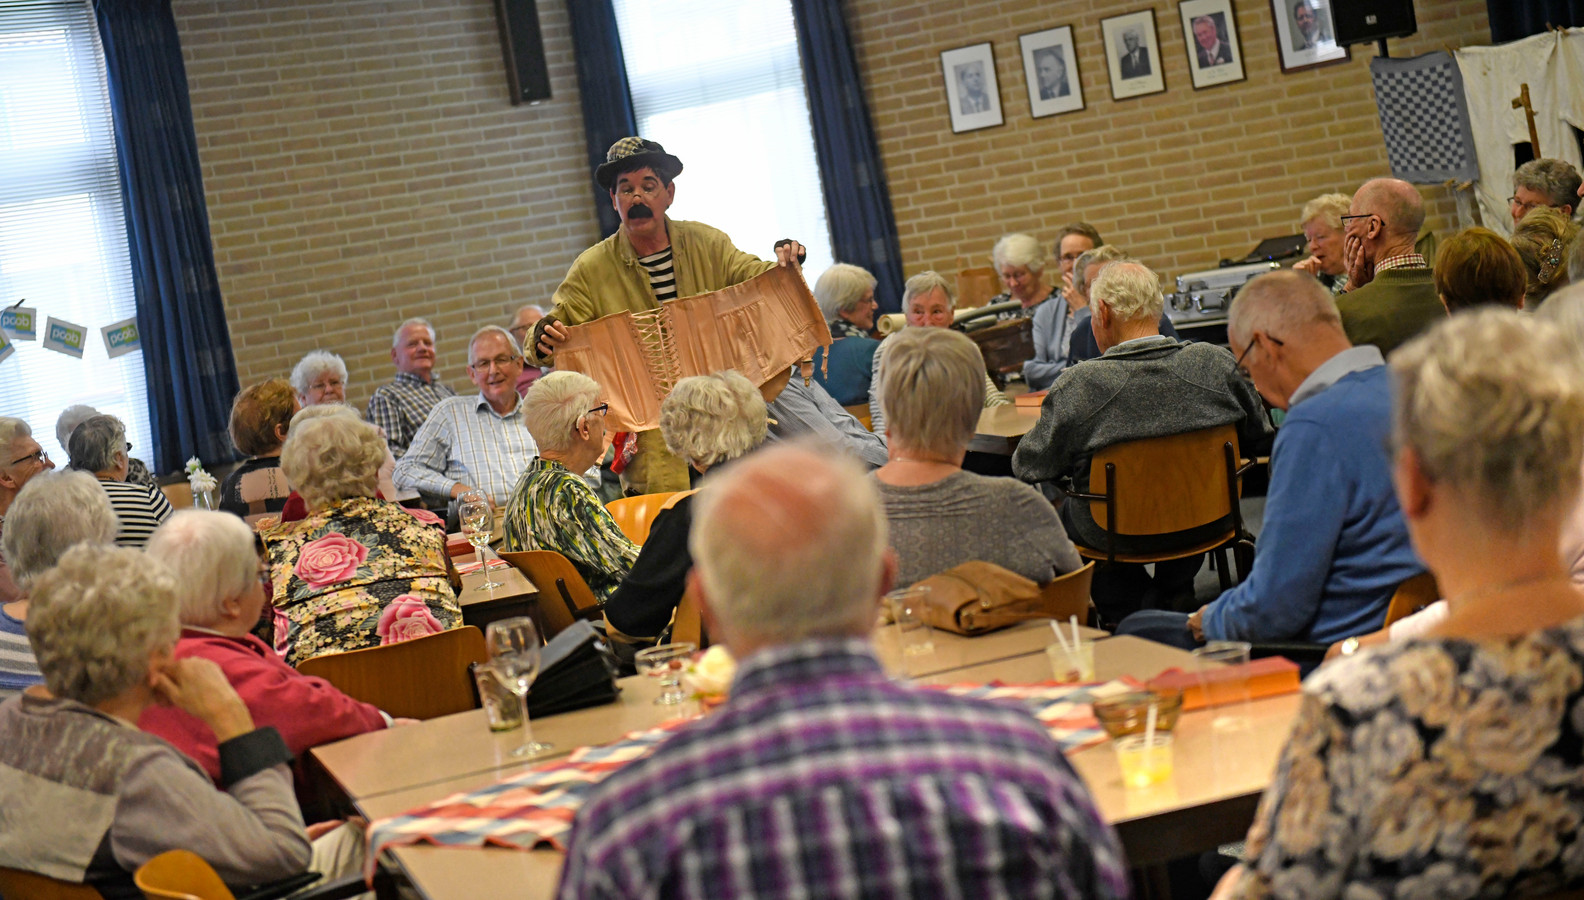 Vier jaar geleden vierde de PCOB Enschede nog het 50-jarig bestaan. Een gezellige bijeenkomst, maar nu lijkt het doek gevallen voor de ouderenbond.